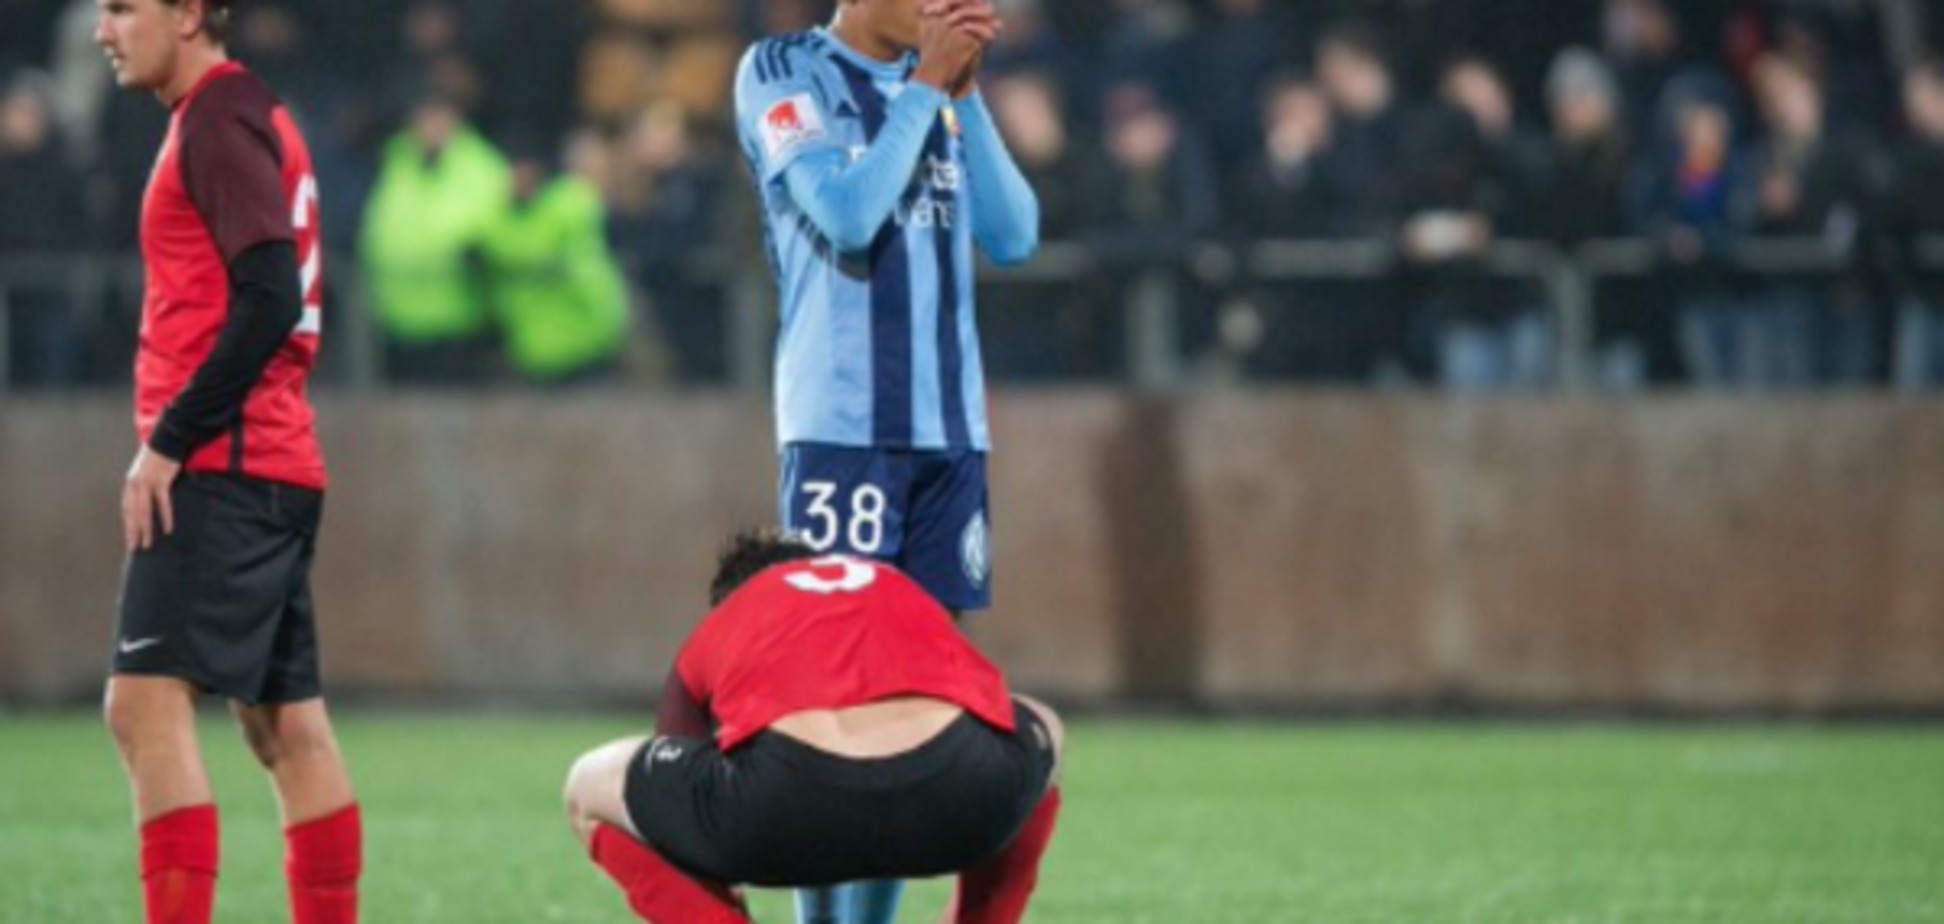 Респект и уважение: шведский футболист поразил необычным поступком во время матча - опубликовано фото